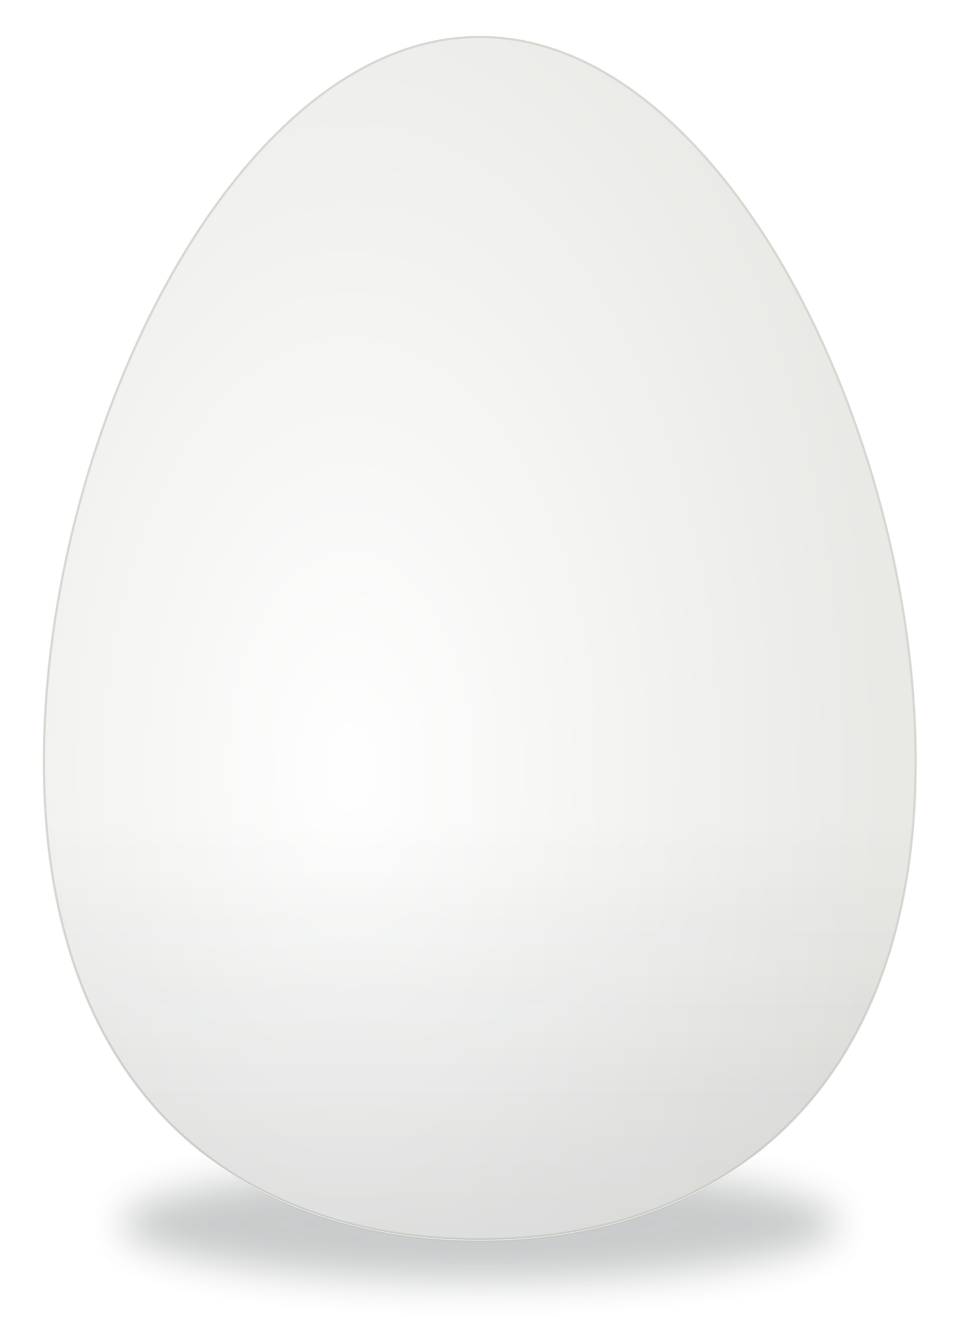 Fondo de imagen PNG de huevo